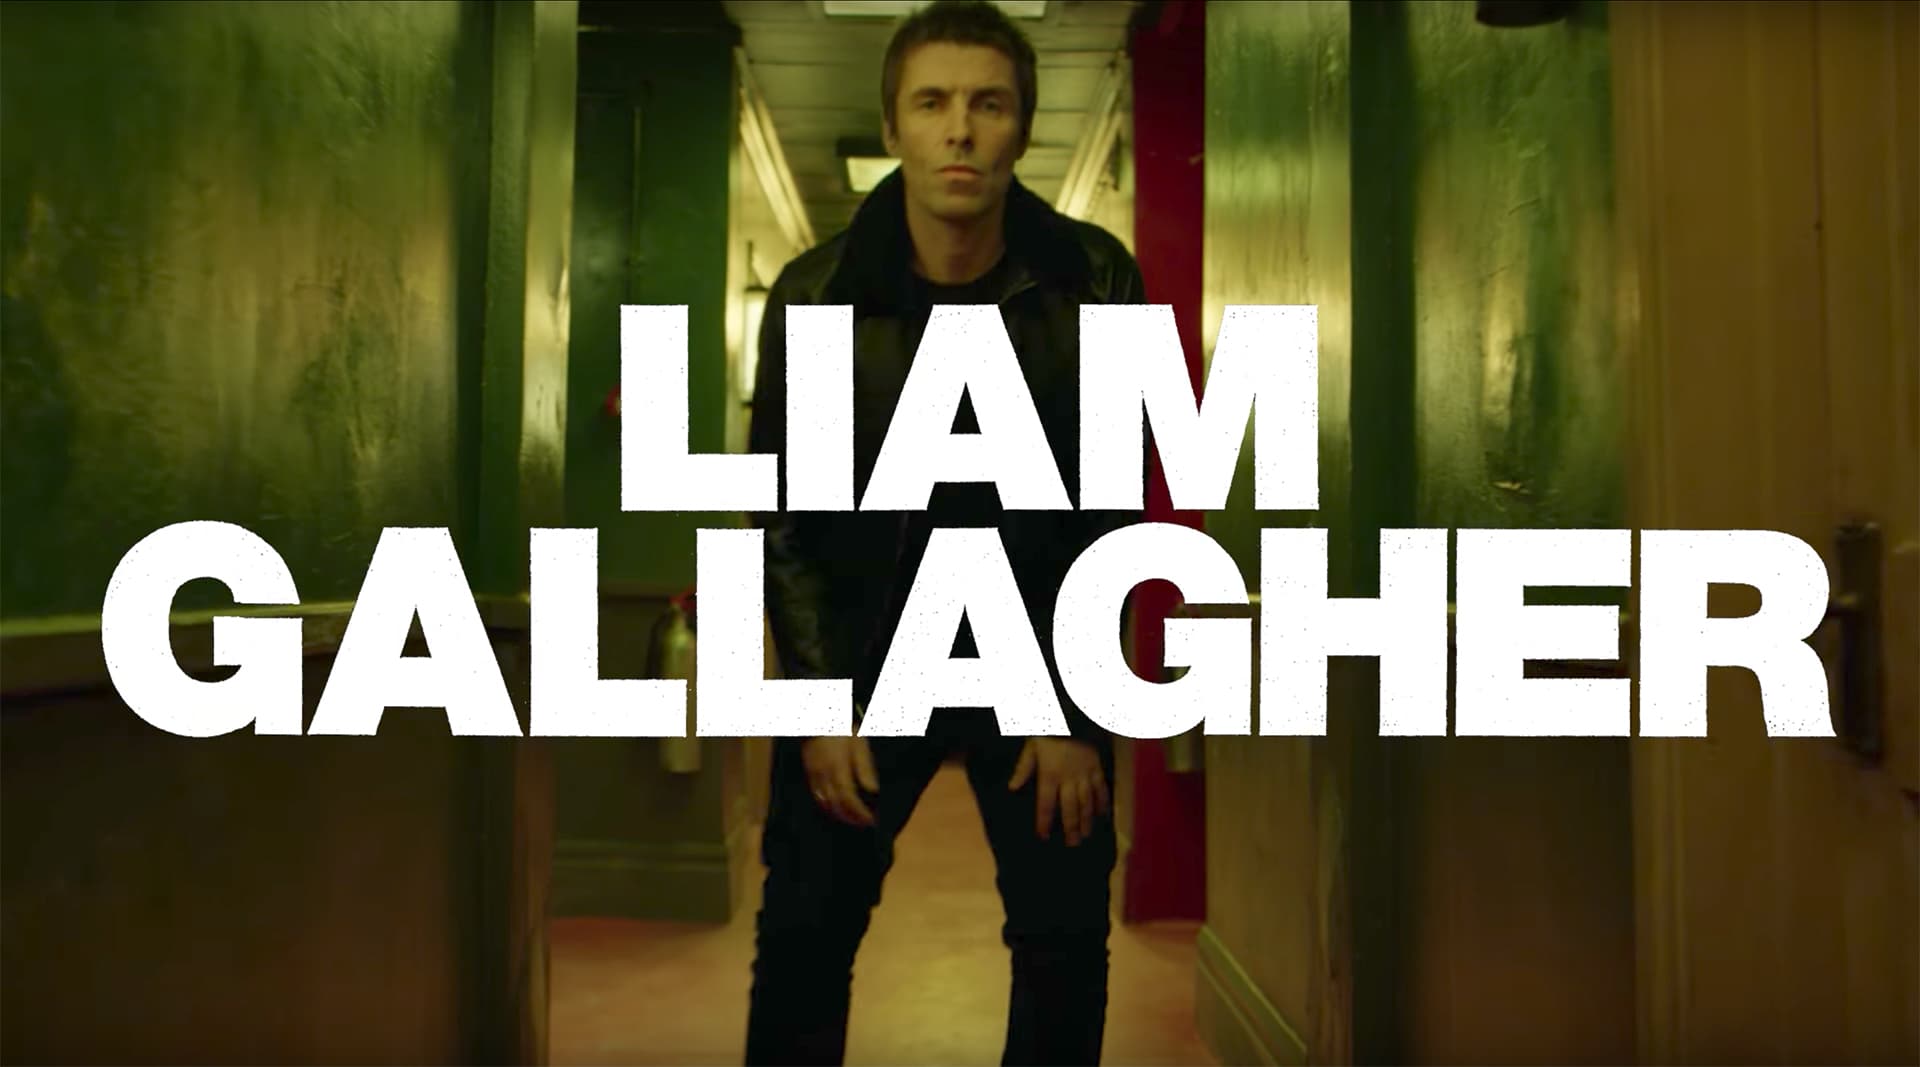 아디다스 자켓을 입은 오아시스의 리암 갤러거 내한공연 기념 인터뷰 (Oasis Liam Gallagher wore a adidas Jacket on Interview) 5